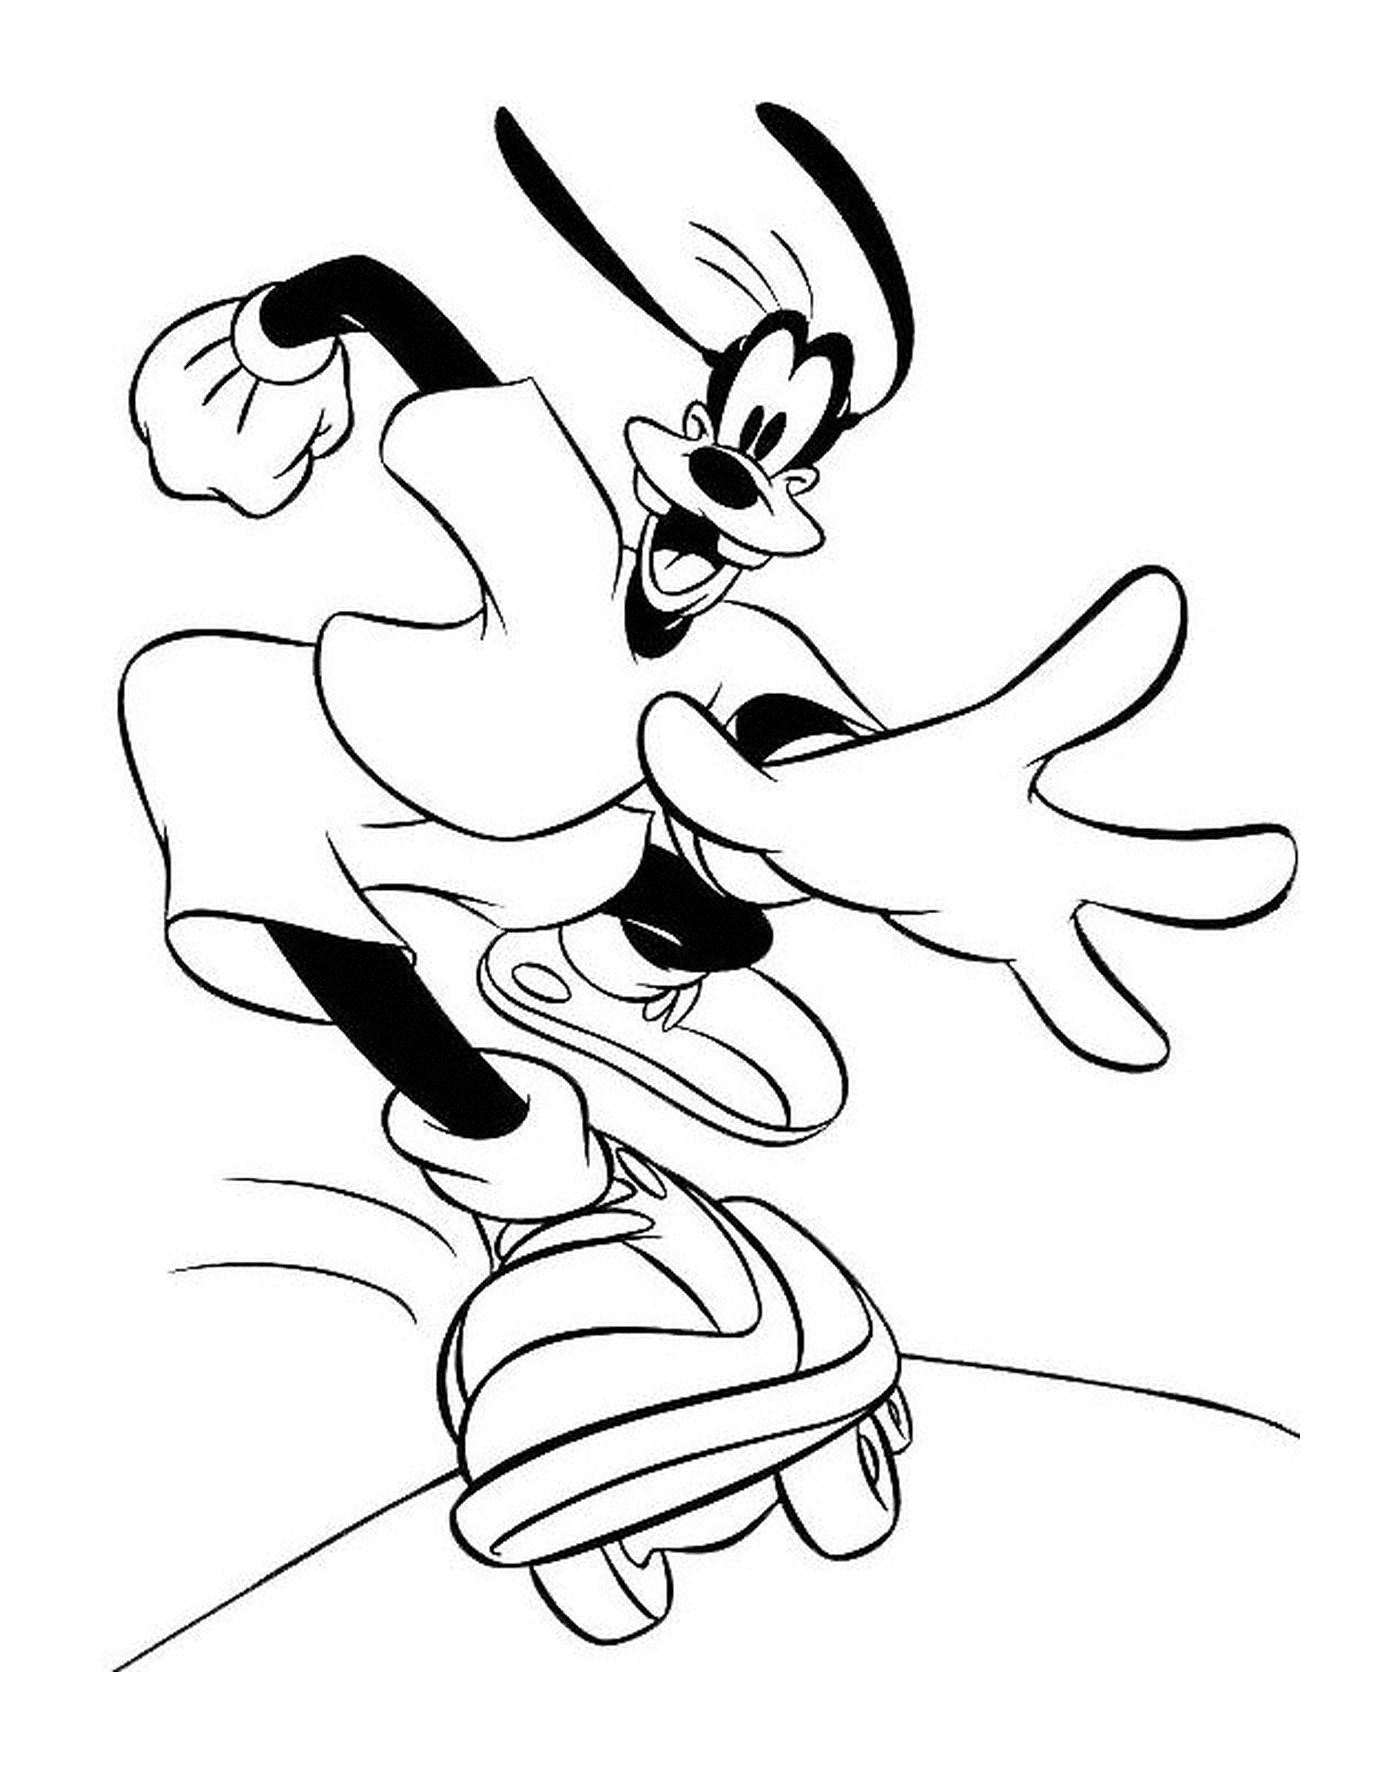   Dingo fait du skateboard en sautant dans les airs 